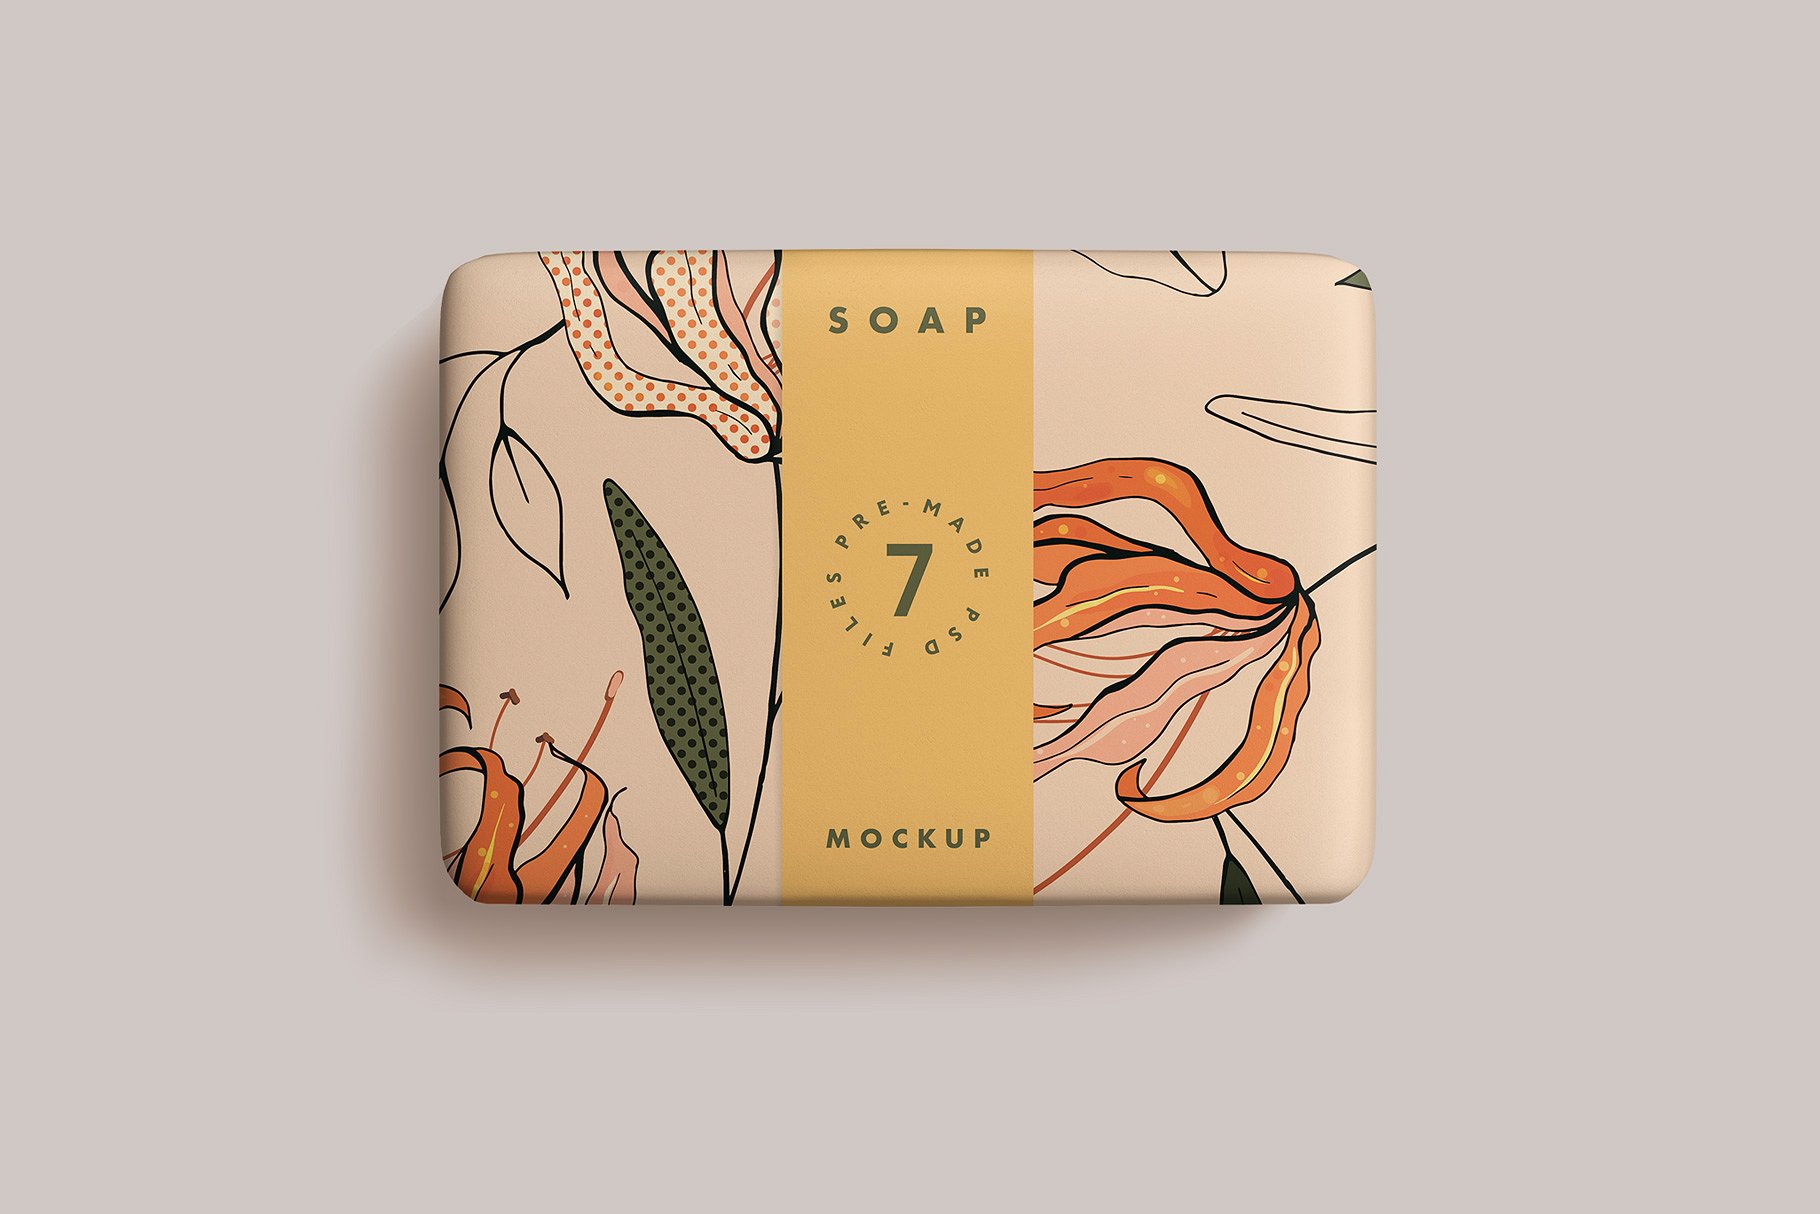 简约优雅的肥皂条包装效果图样机模板  Soap Bar Mockup插图